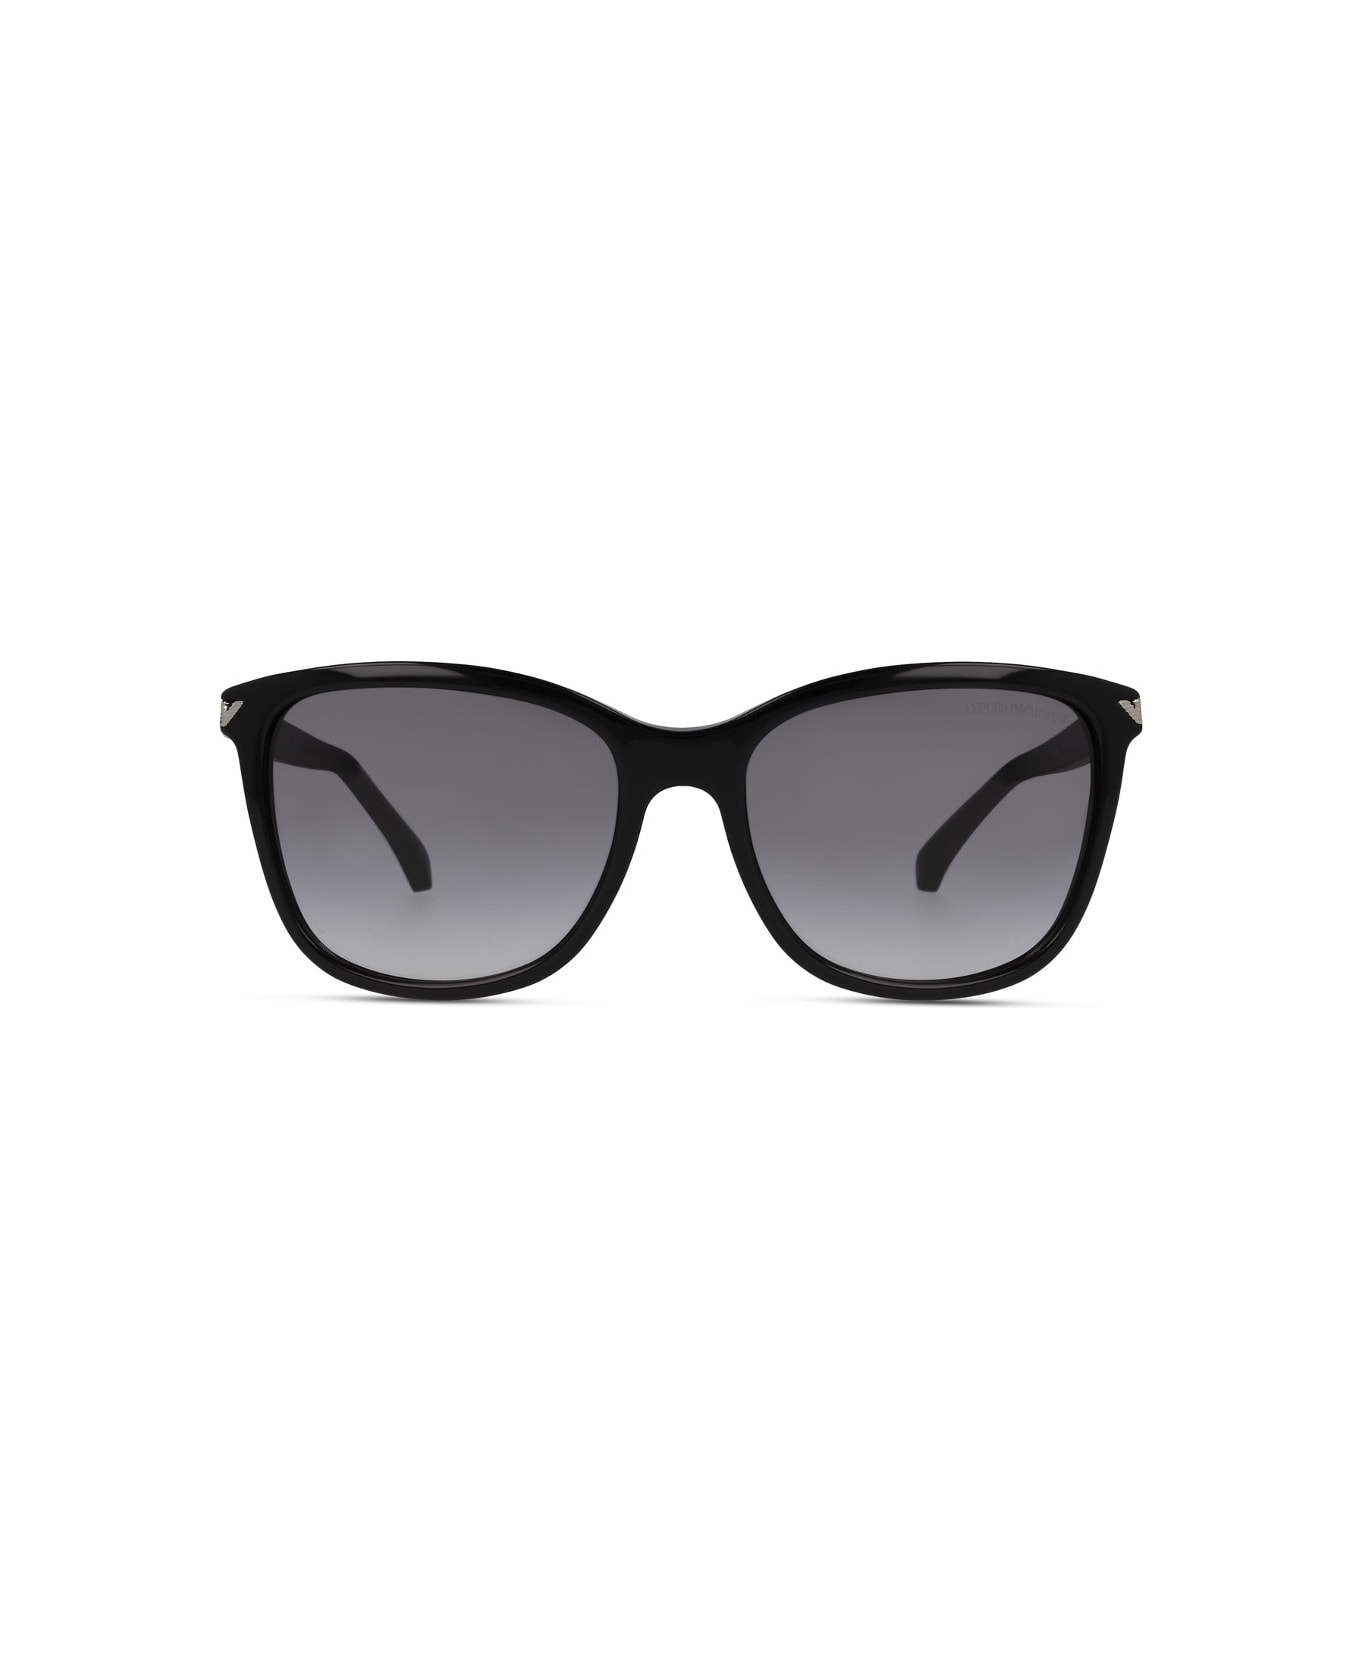 Emporio Armani EA4060 5017/8G Sunglasses サングラス